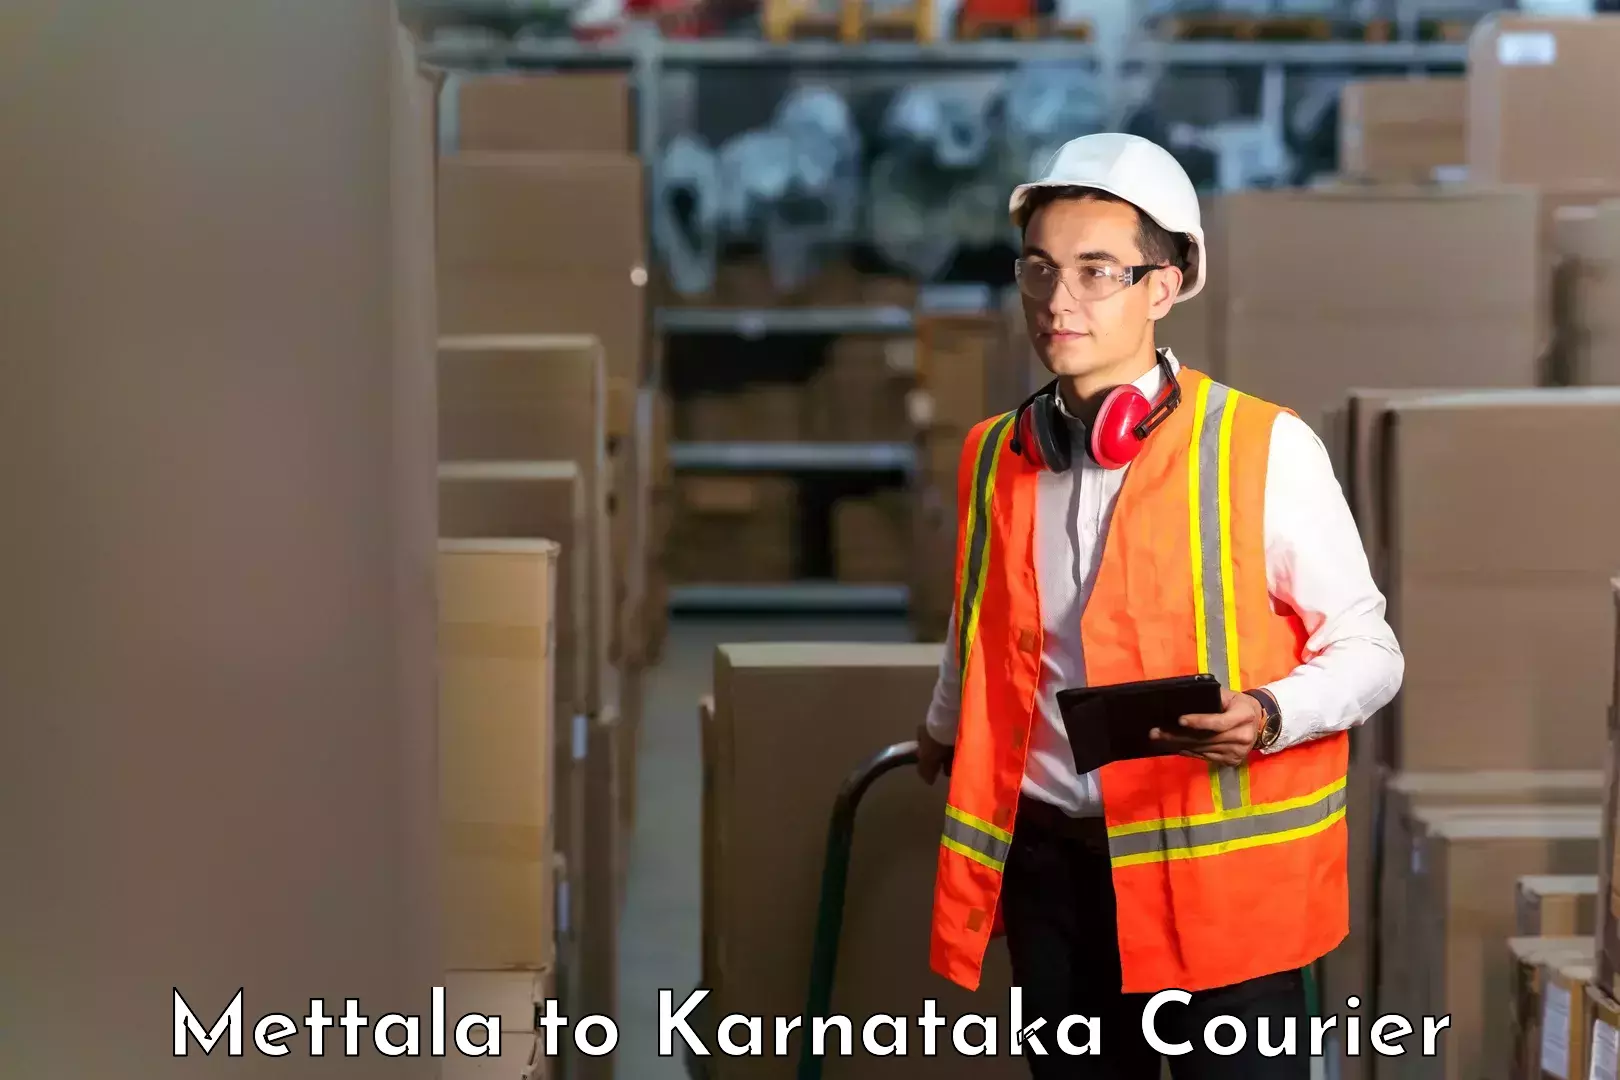 Efficient cargo services Mettala to Karnataka